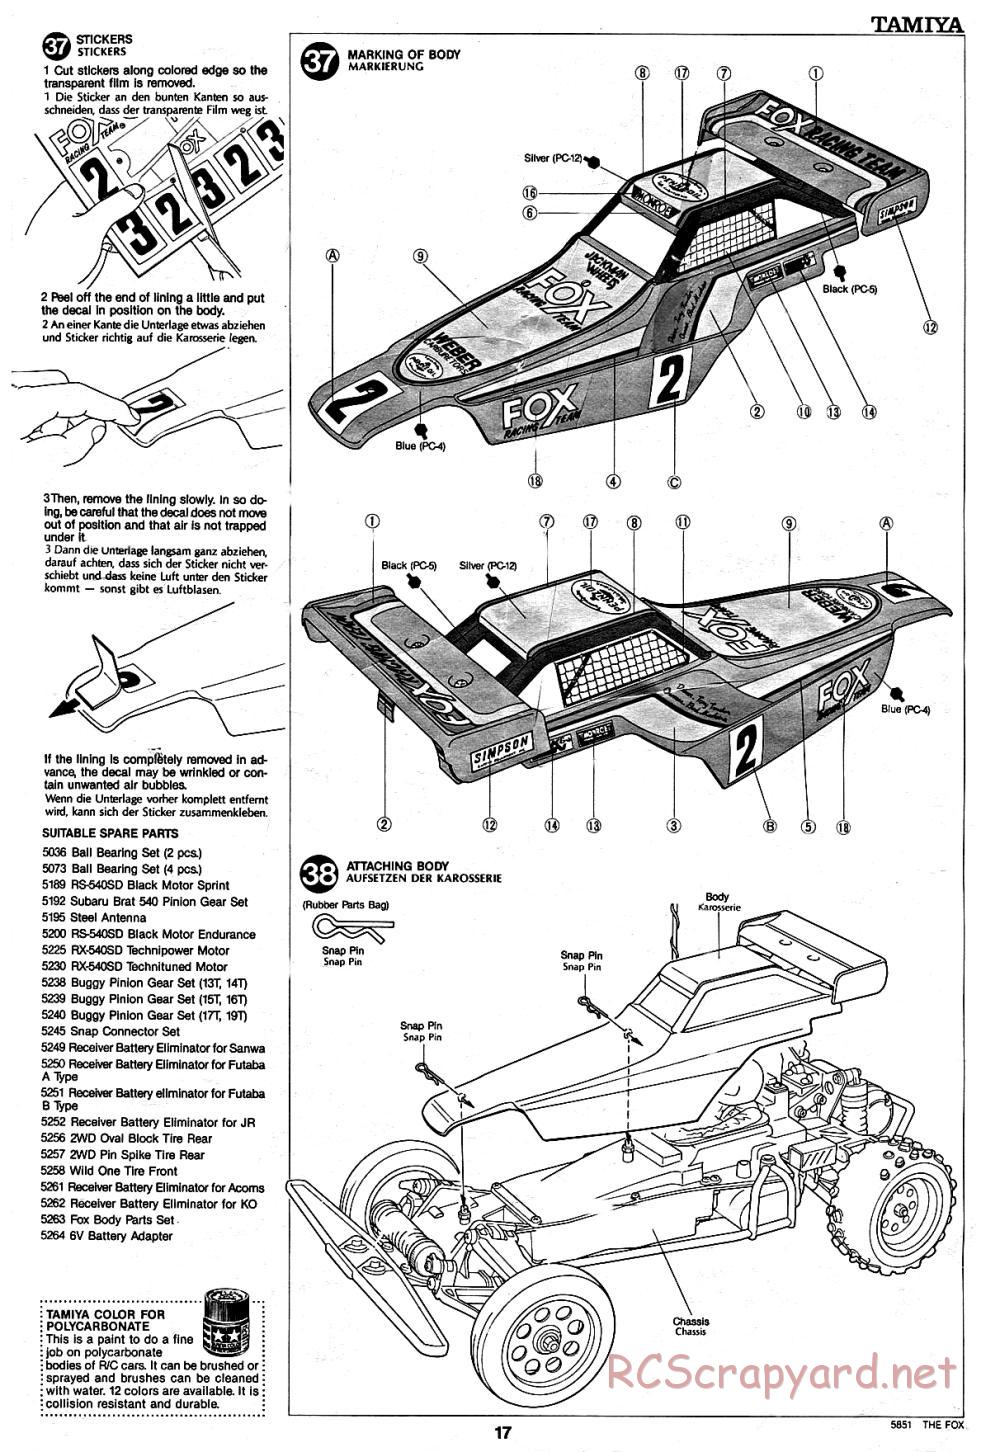 Tamiya - The Fox - 58051 - Manual - Page 17